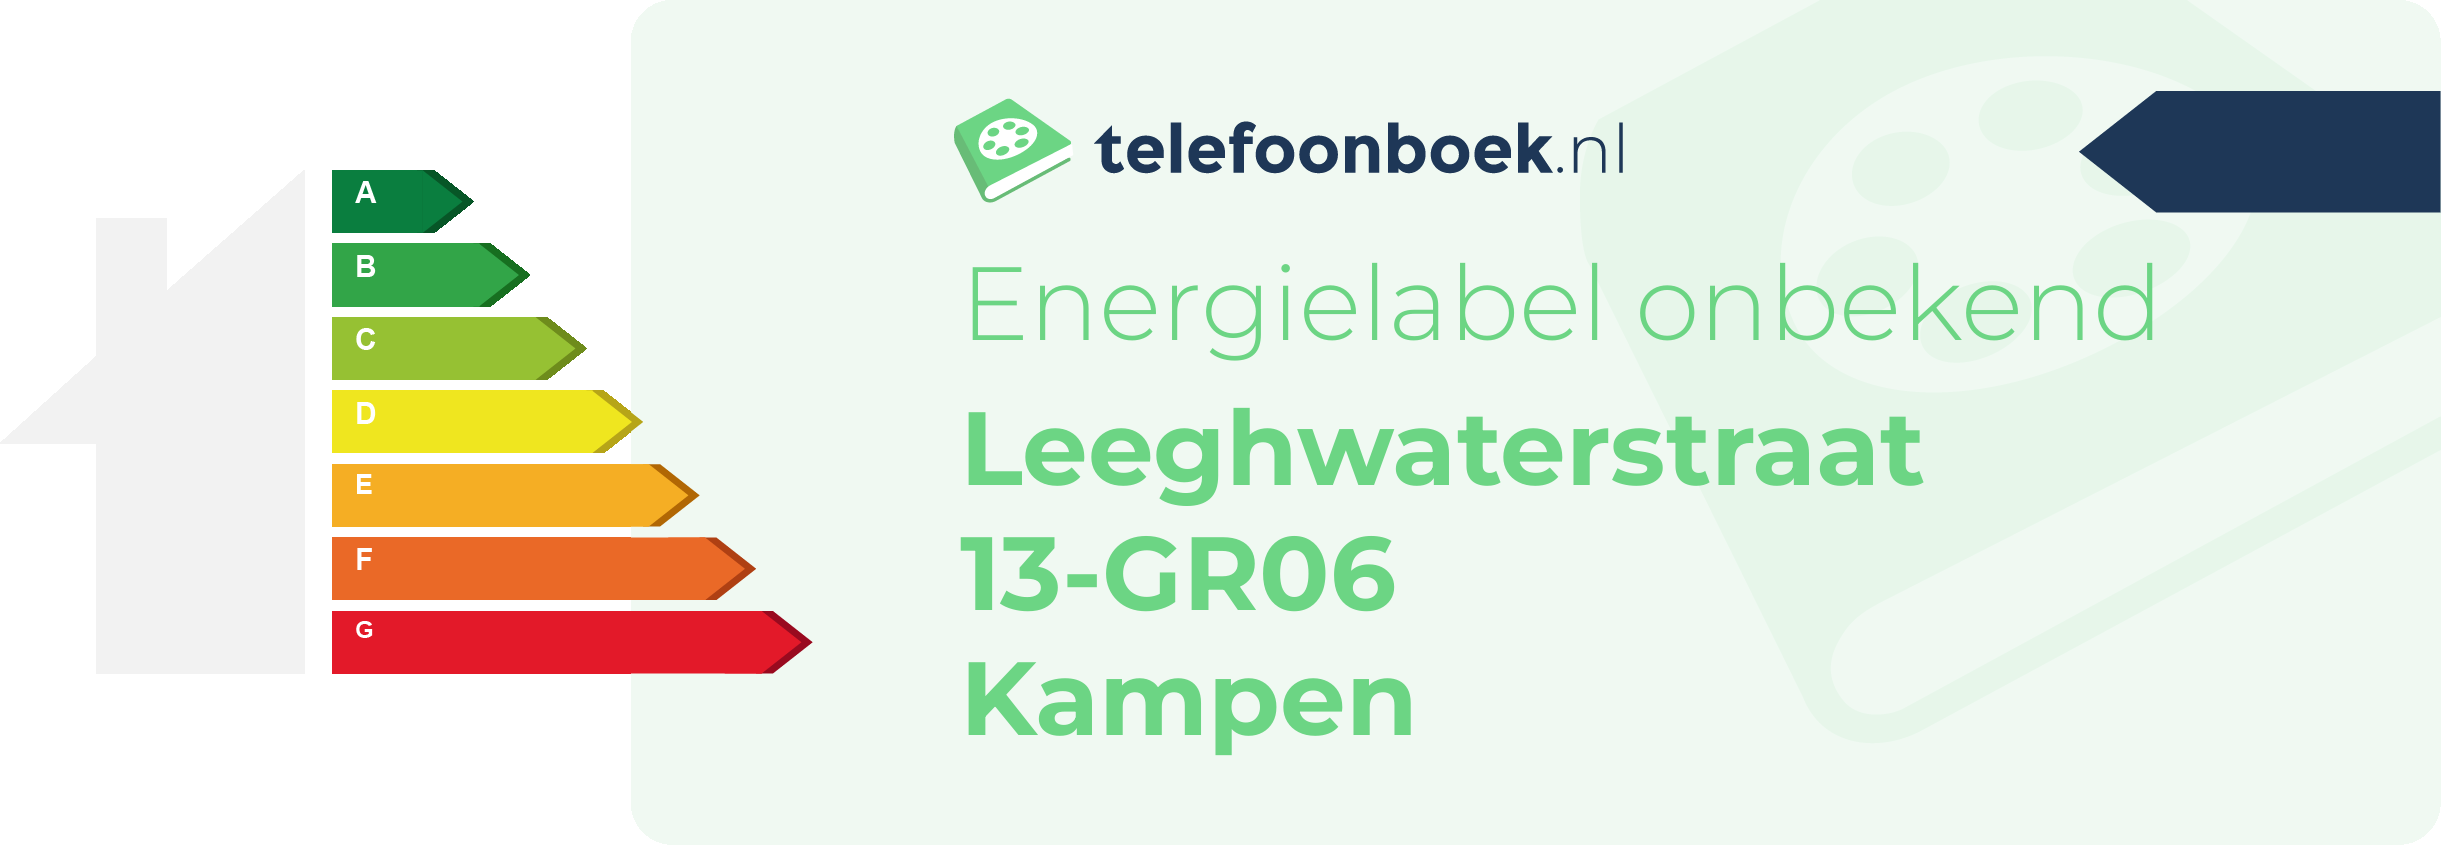 Energielabel Leeghwaterstraat 13-GR06 Kampen